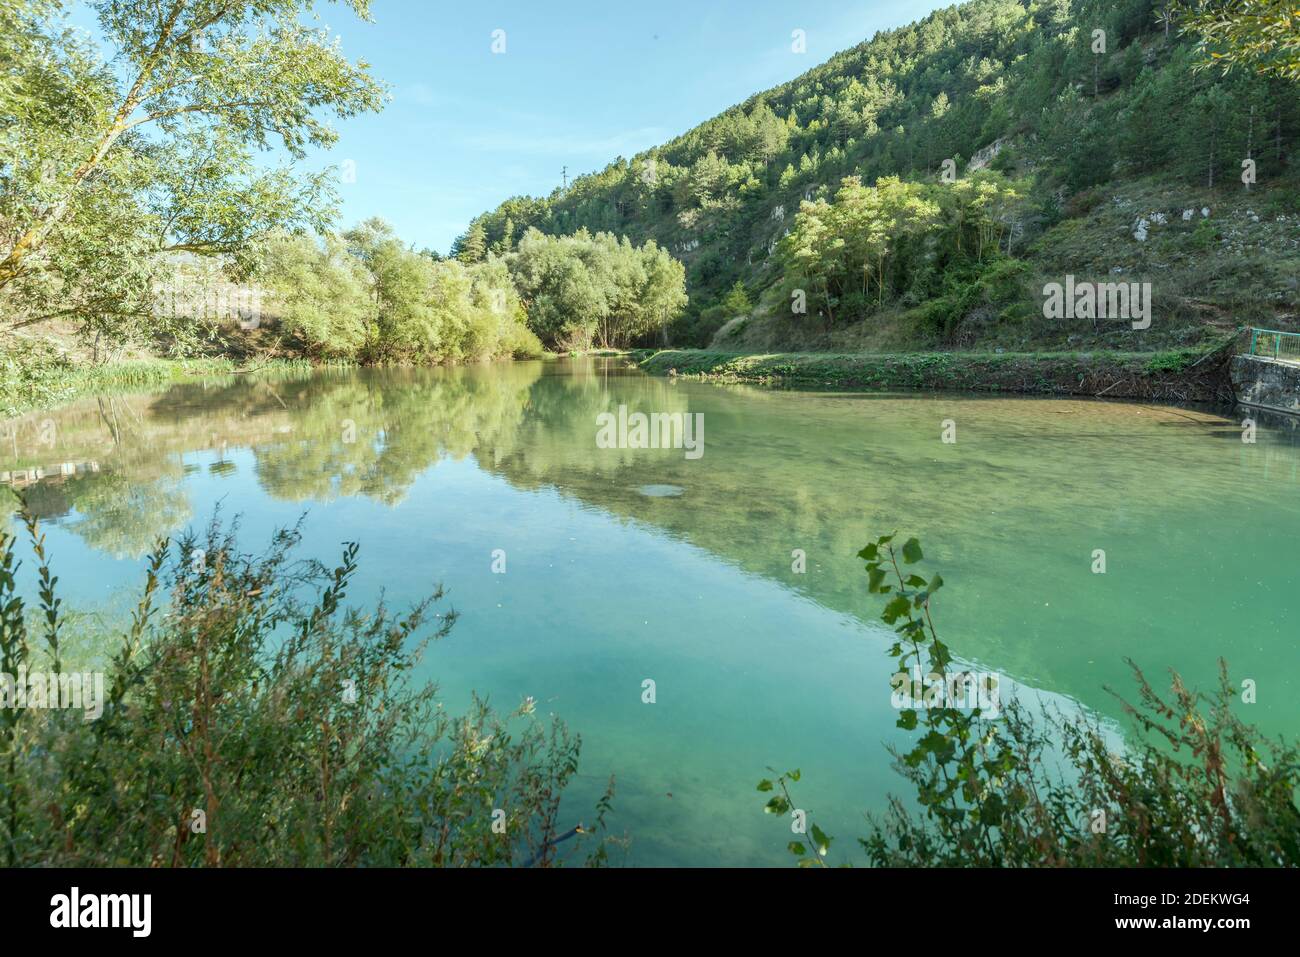 Paesaggio con acque limpide di laghetto formato dal fiume Giovenco tra pendii boscosi, sparato in luce intensa vicino a Pescina, l'Aquila, Abruzzo, Italia Foto Stock